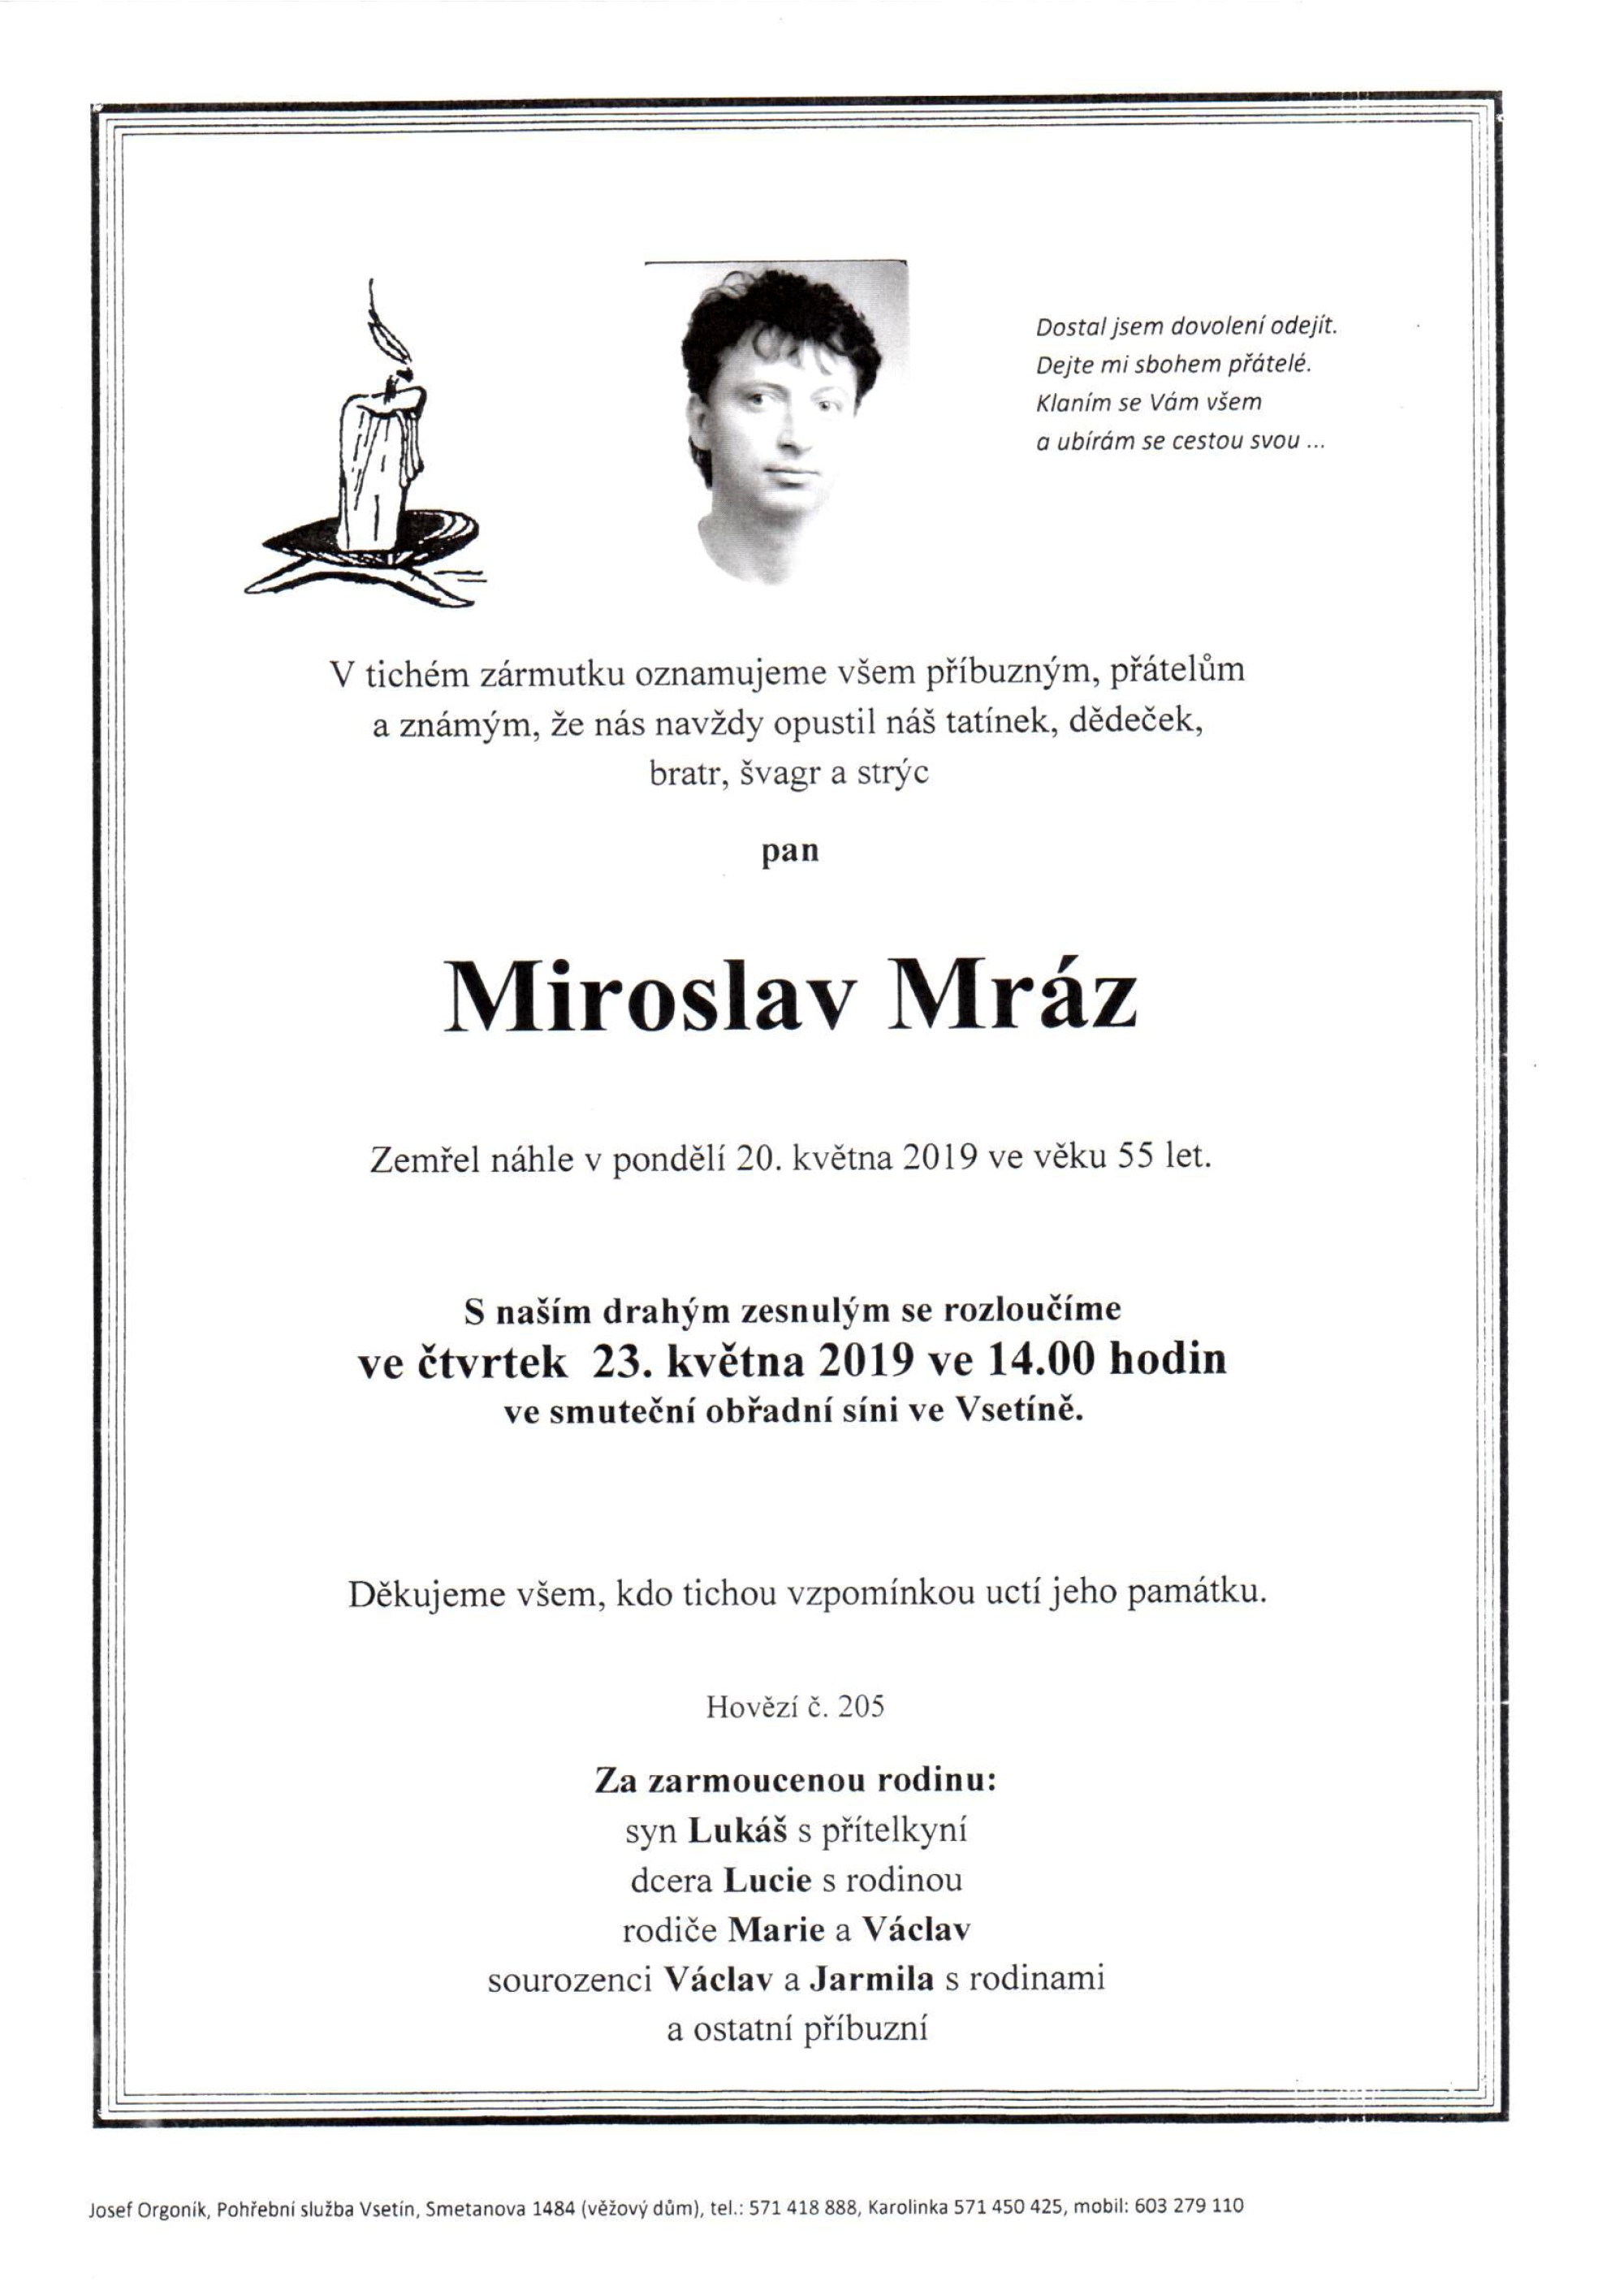 Miroslav Mráz